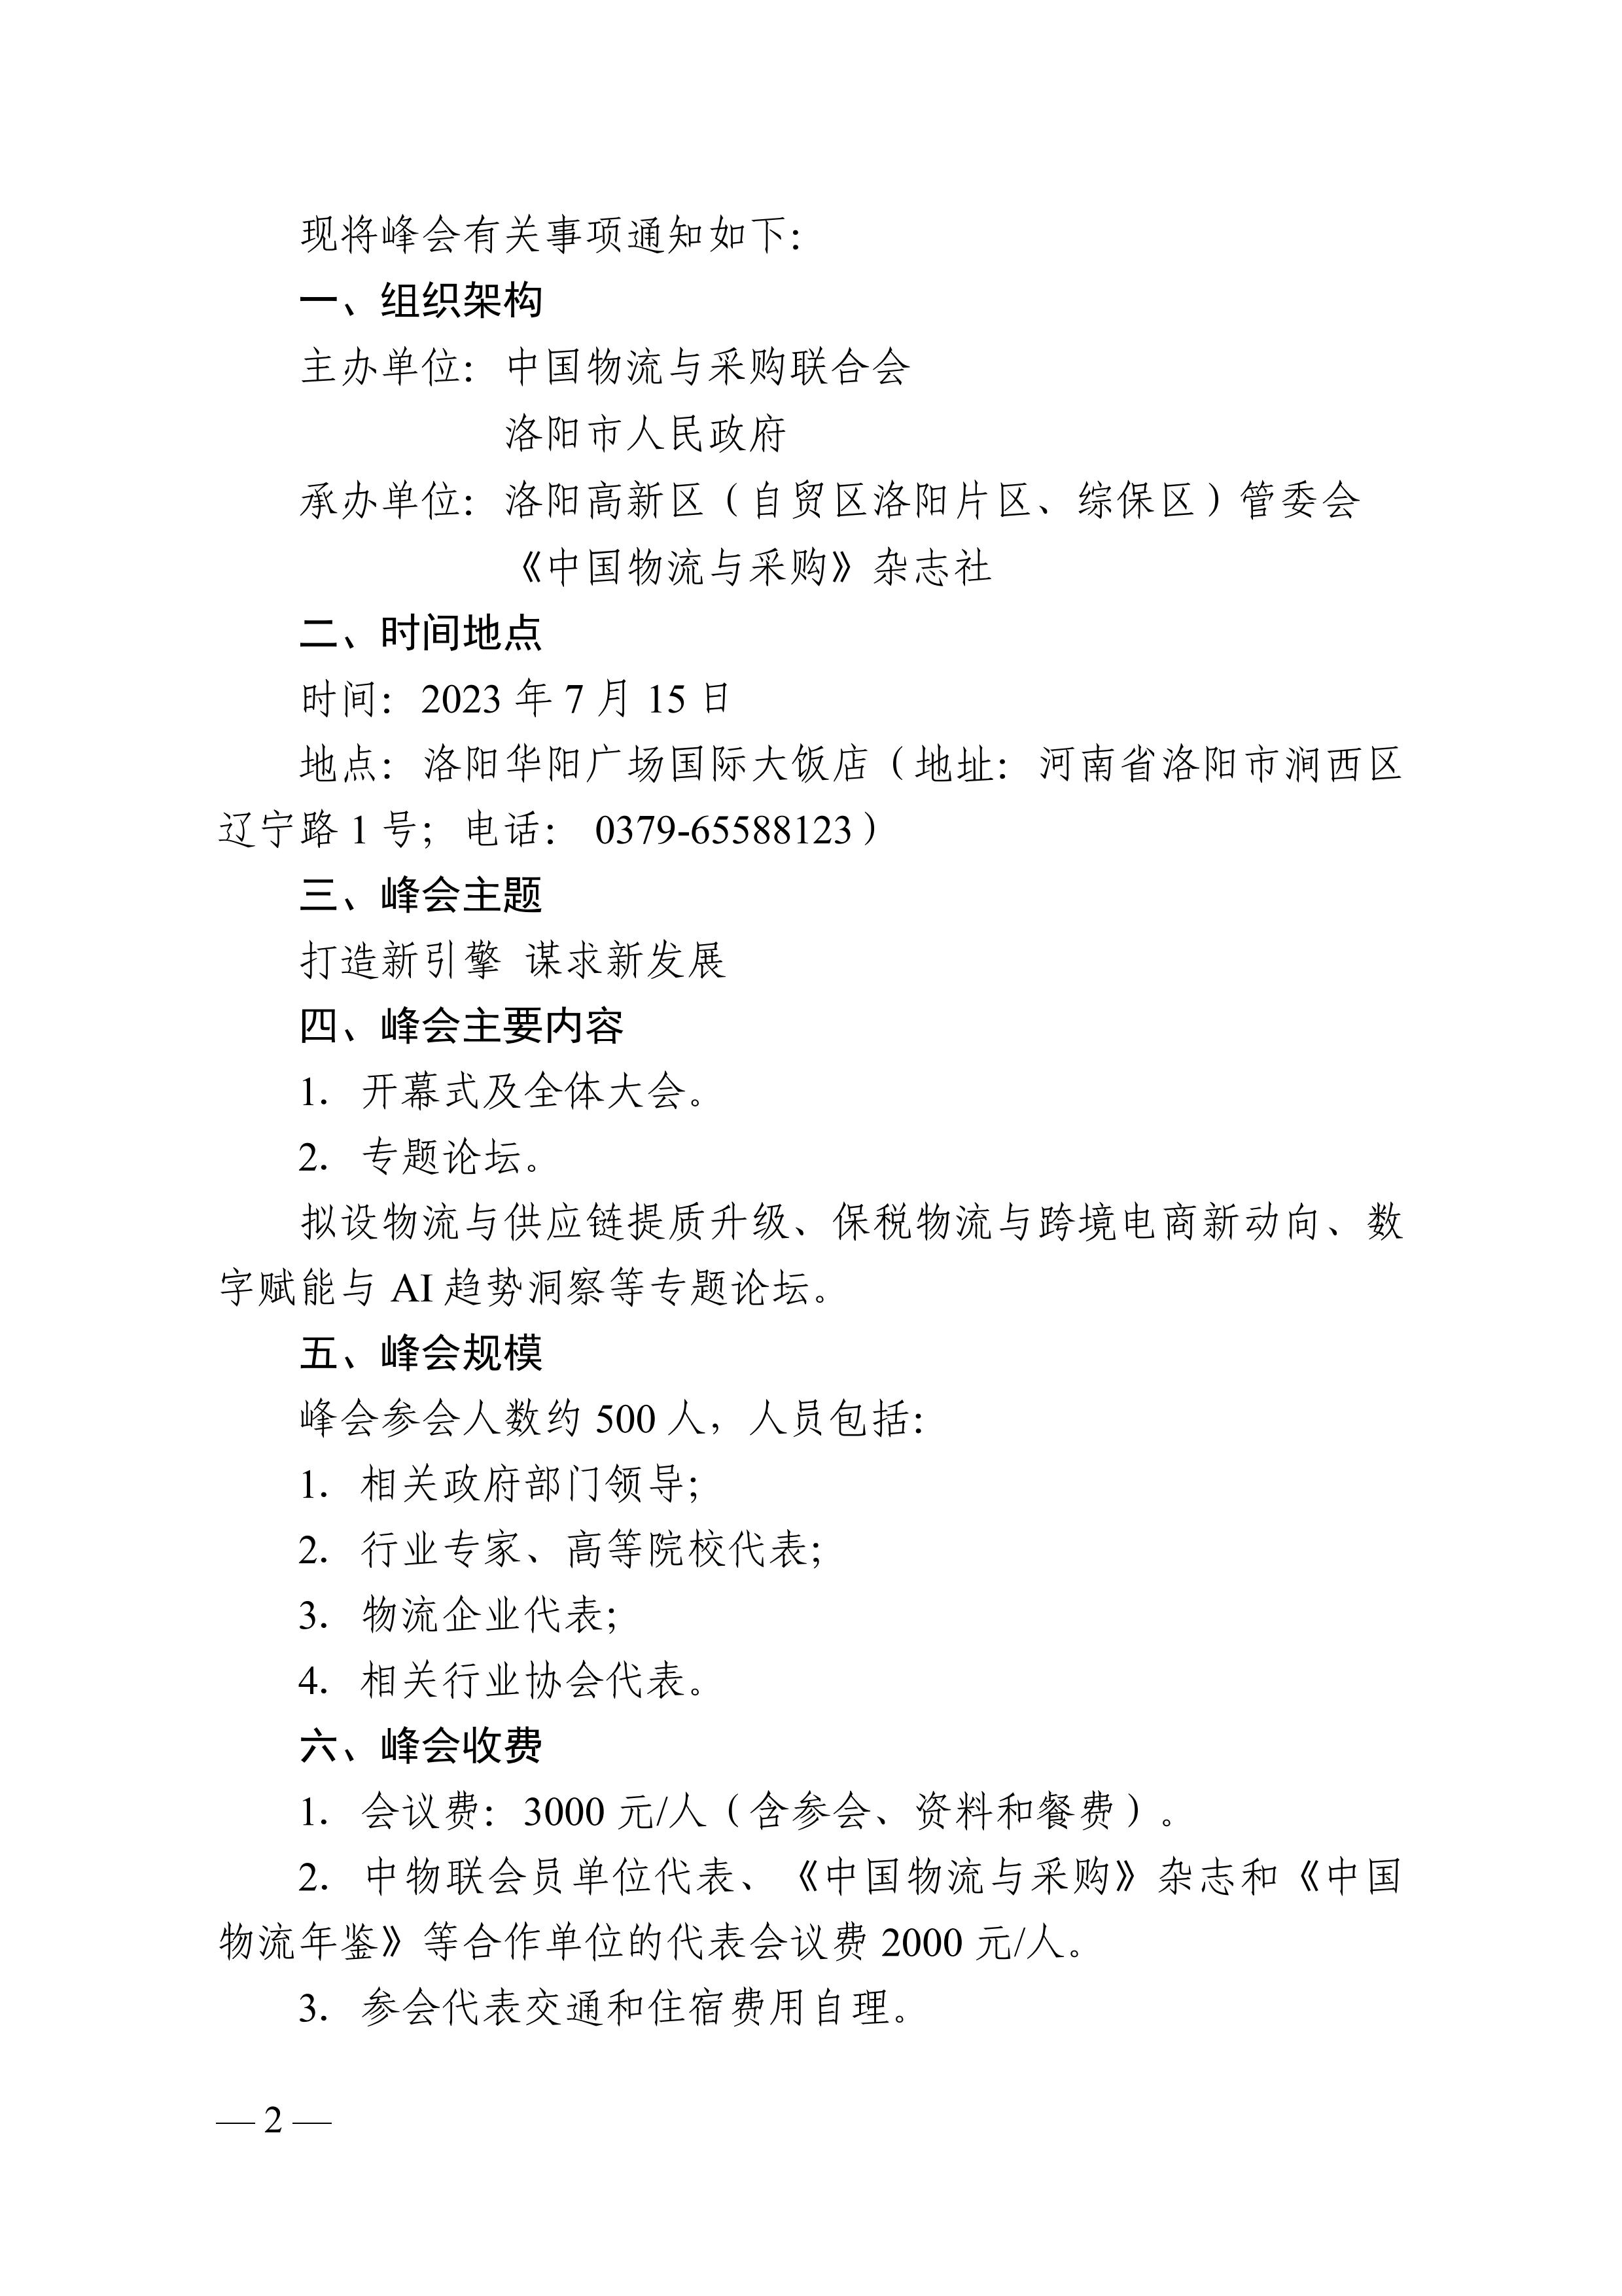 关于召开“2023中国物流企业家夏季峰会.文件通知pdf_02.jpg